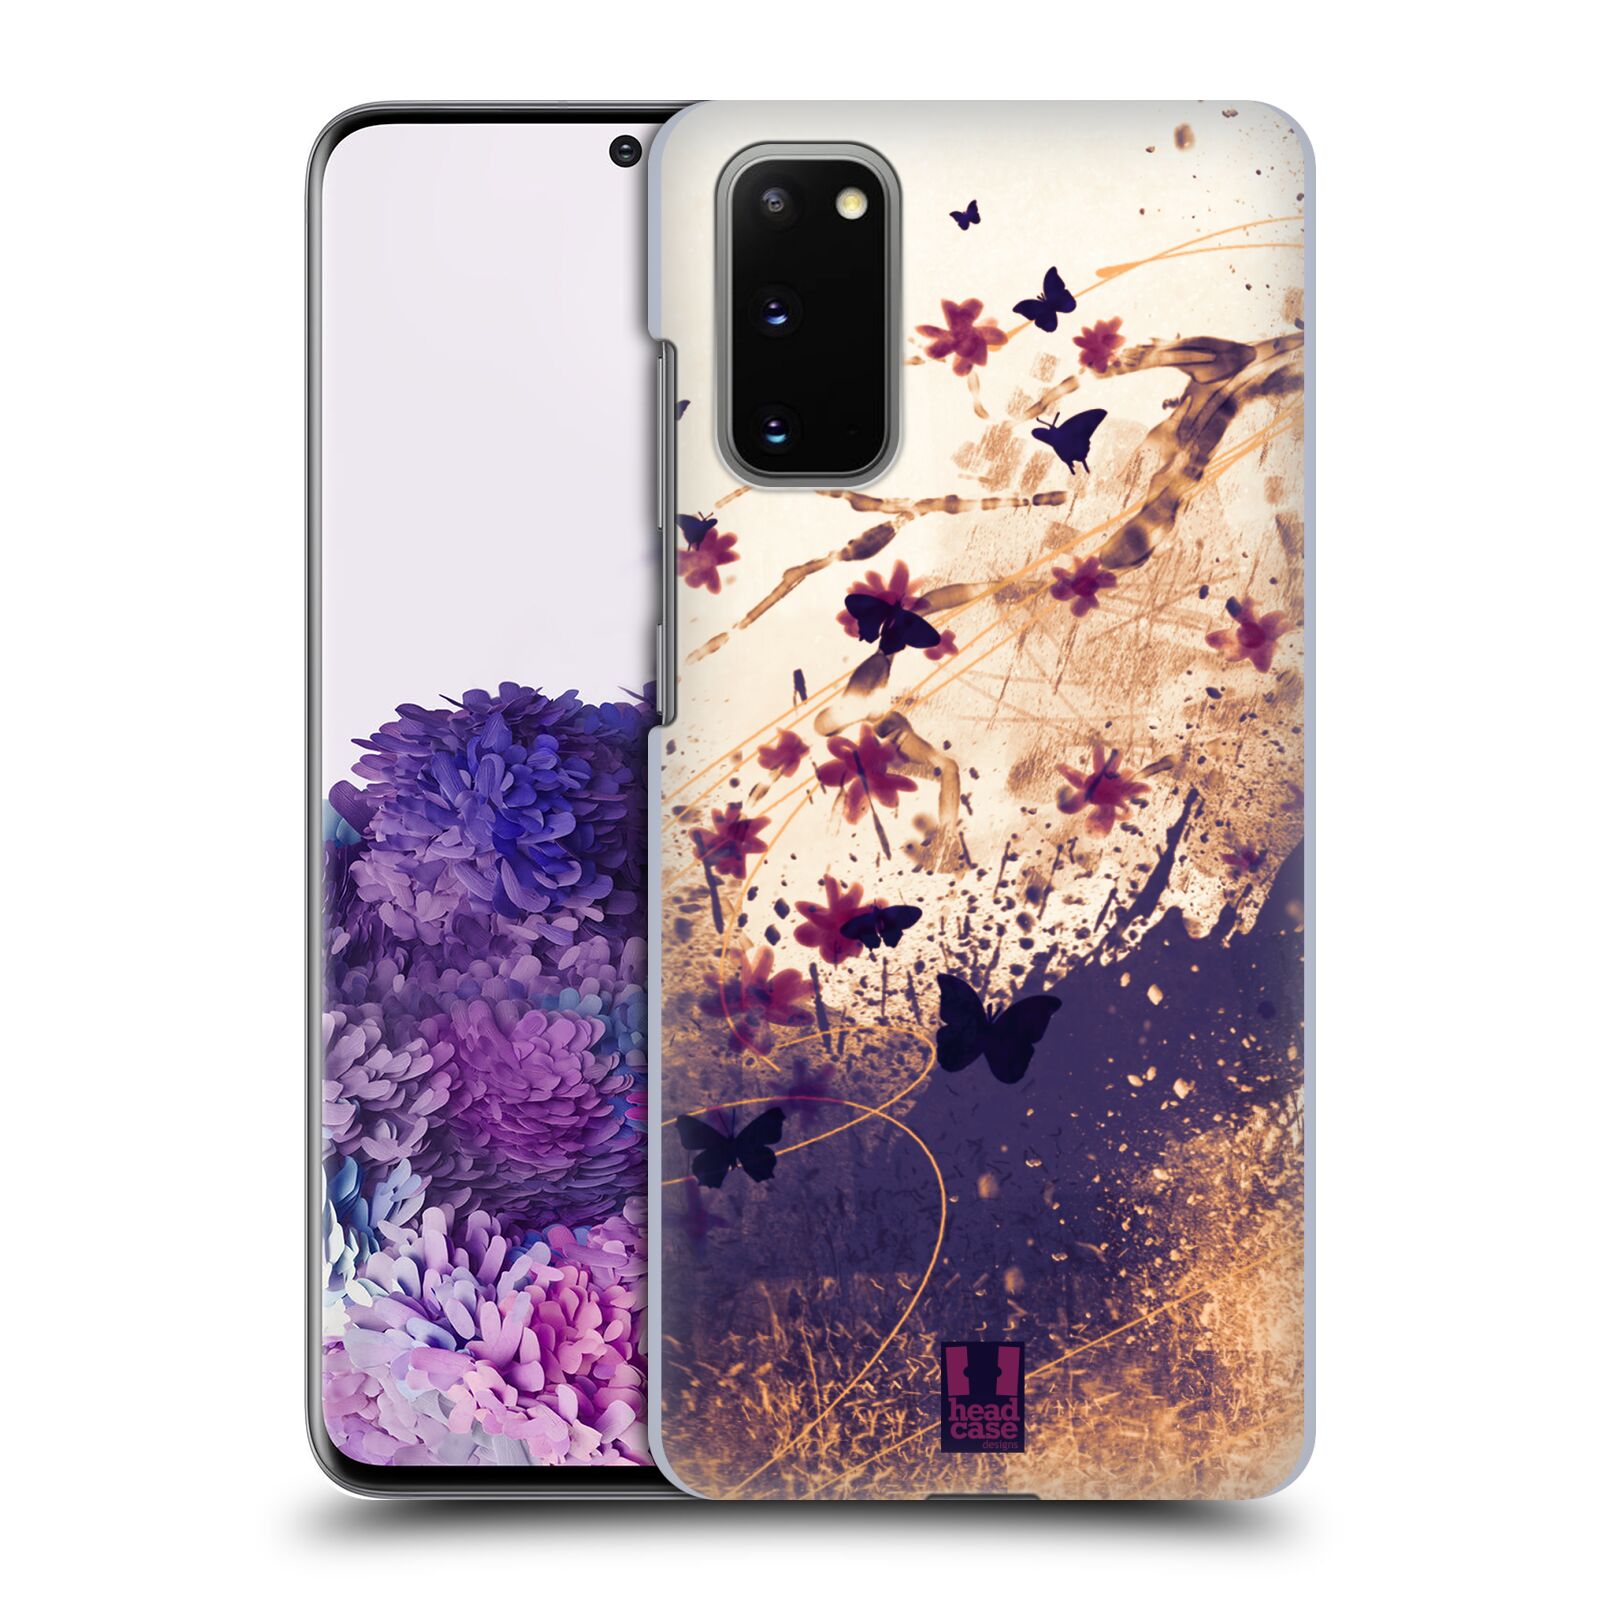 Pouzdro na mobil Samsung Galaxy S20 - HEAD CASE - vzor Kreslené barevné květiny KVĚTY A MOTÝLCI